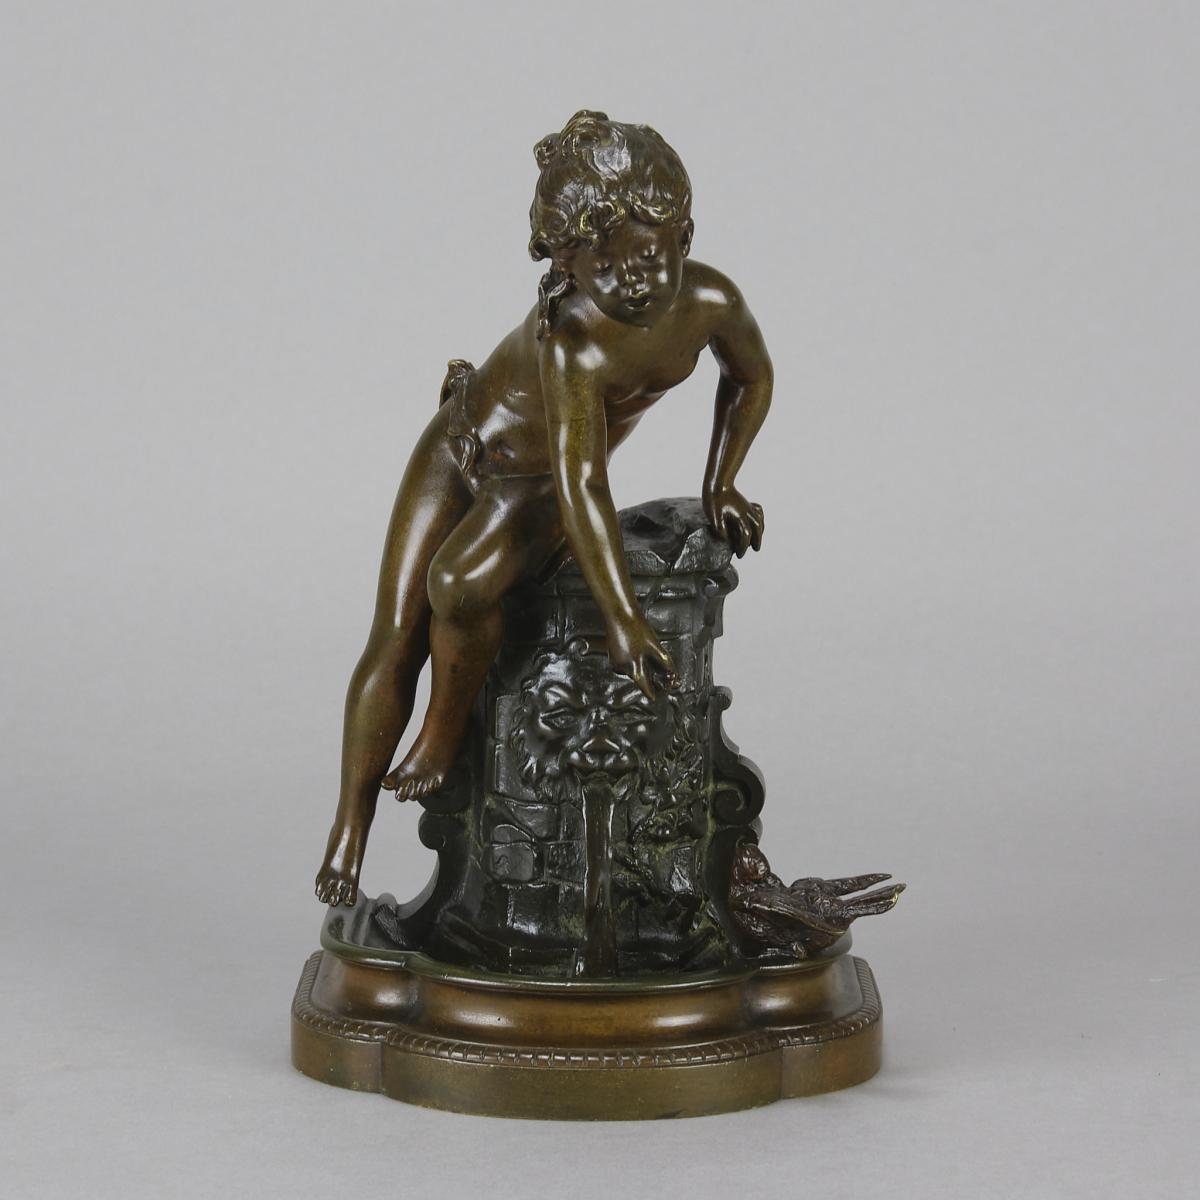 19th Century Art Nouveau Bronze Sculpture "Fille au Puits" by Auguste Moreau